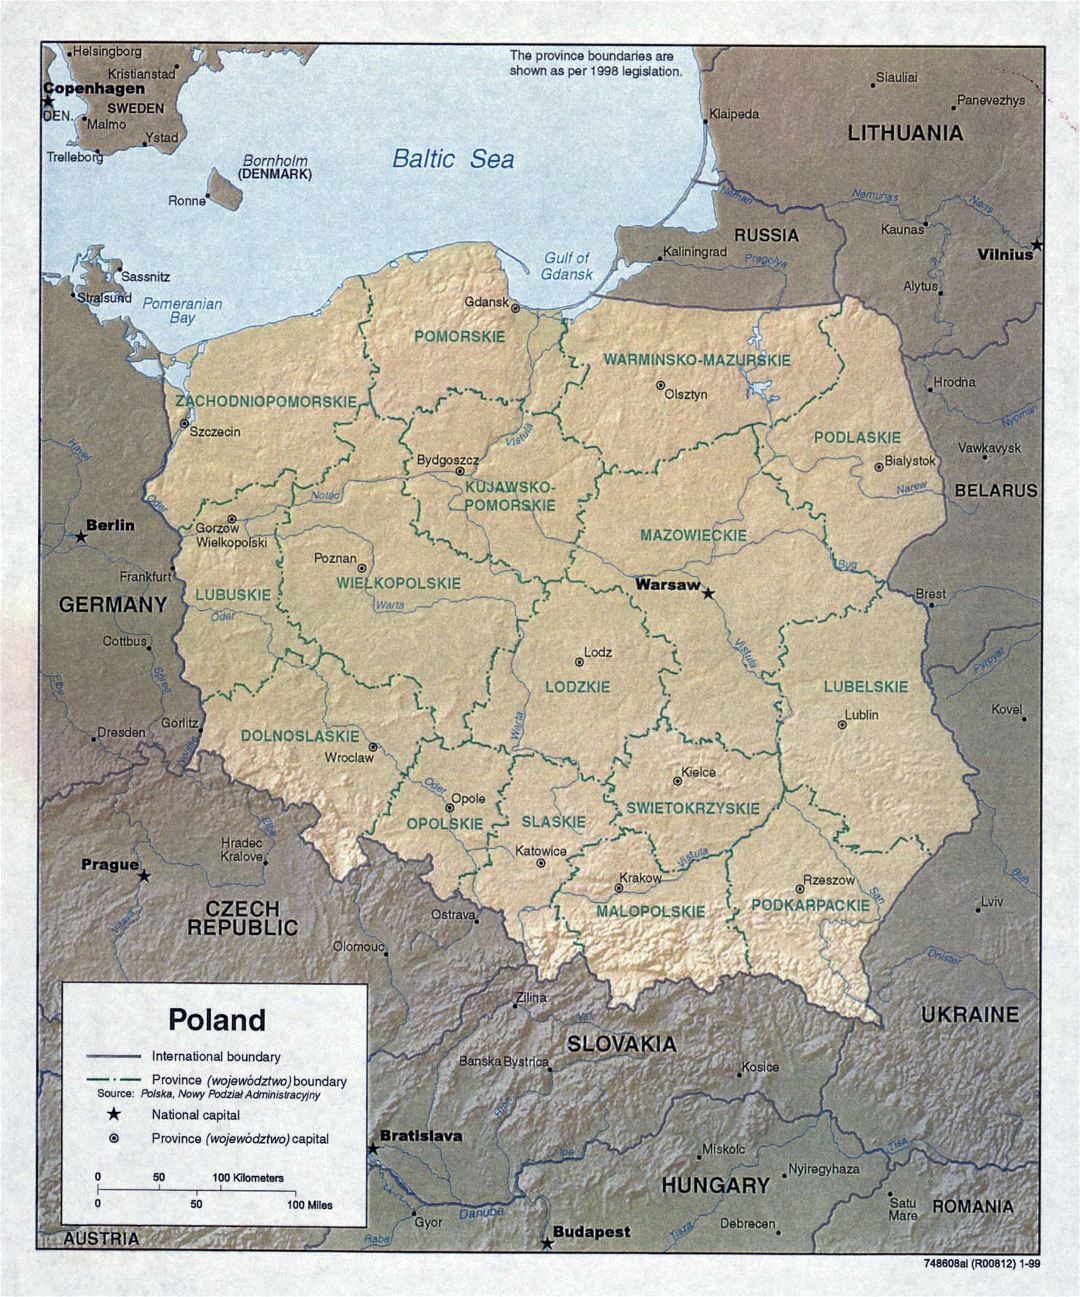 Grande detallado mapa política y administrativa de Polonia con socorro y principales ciudades - 1999